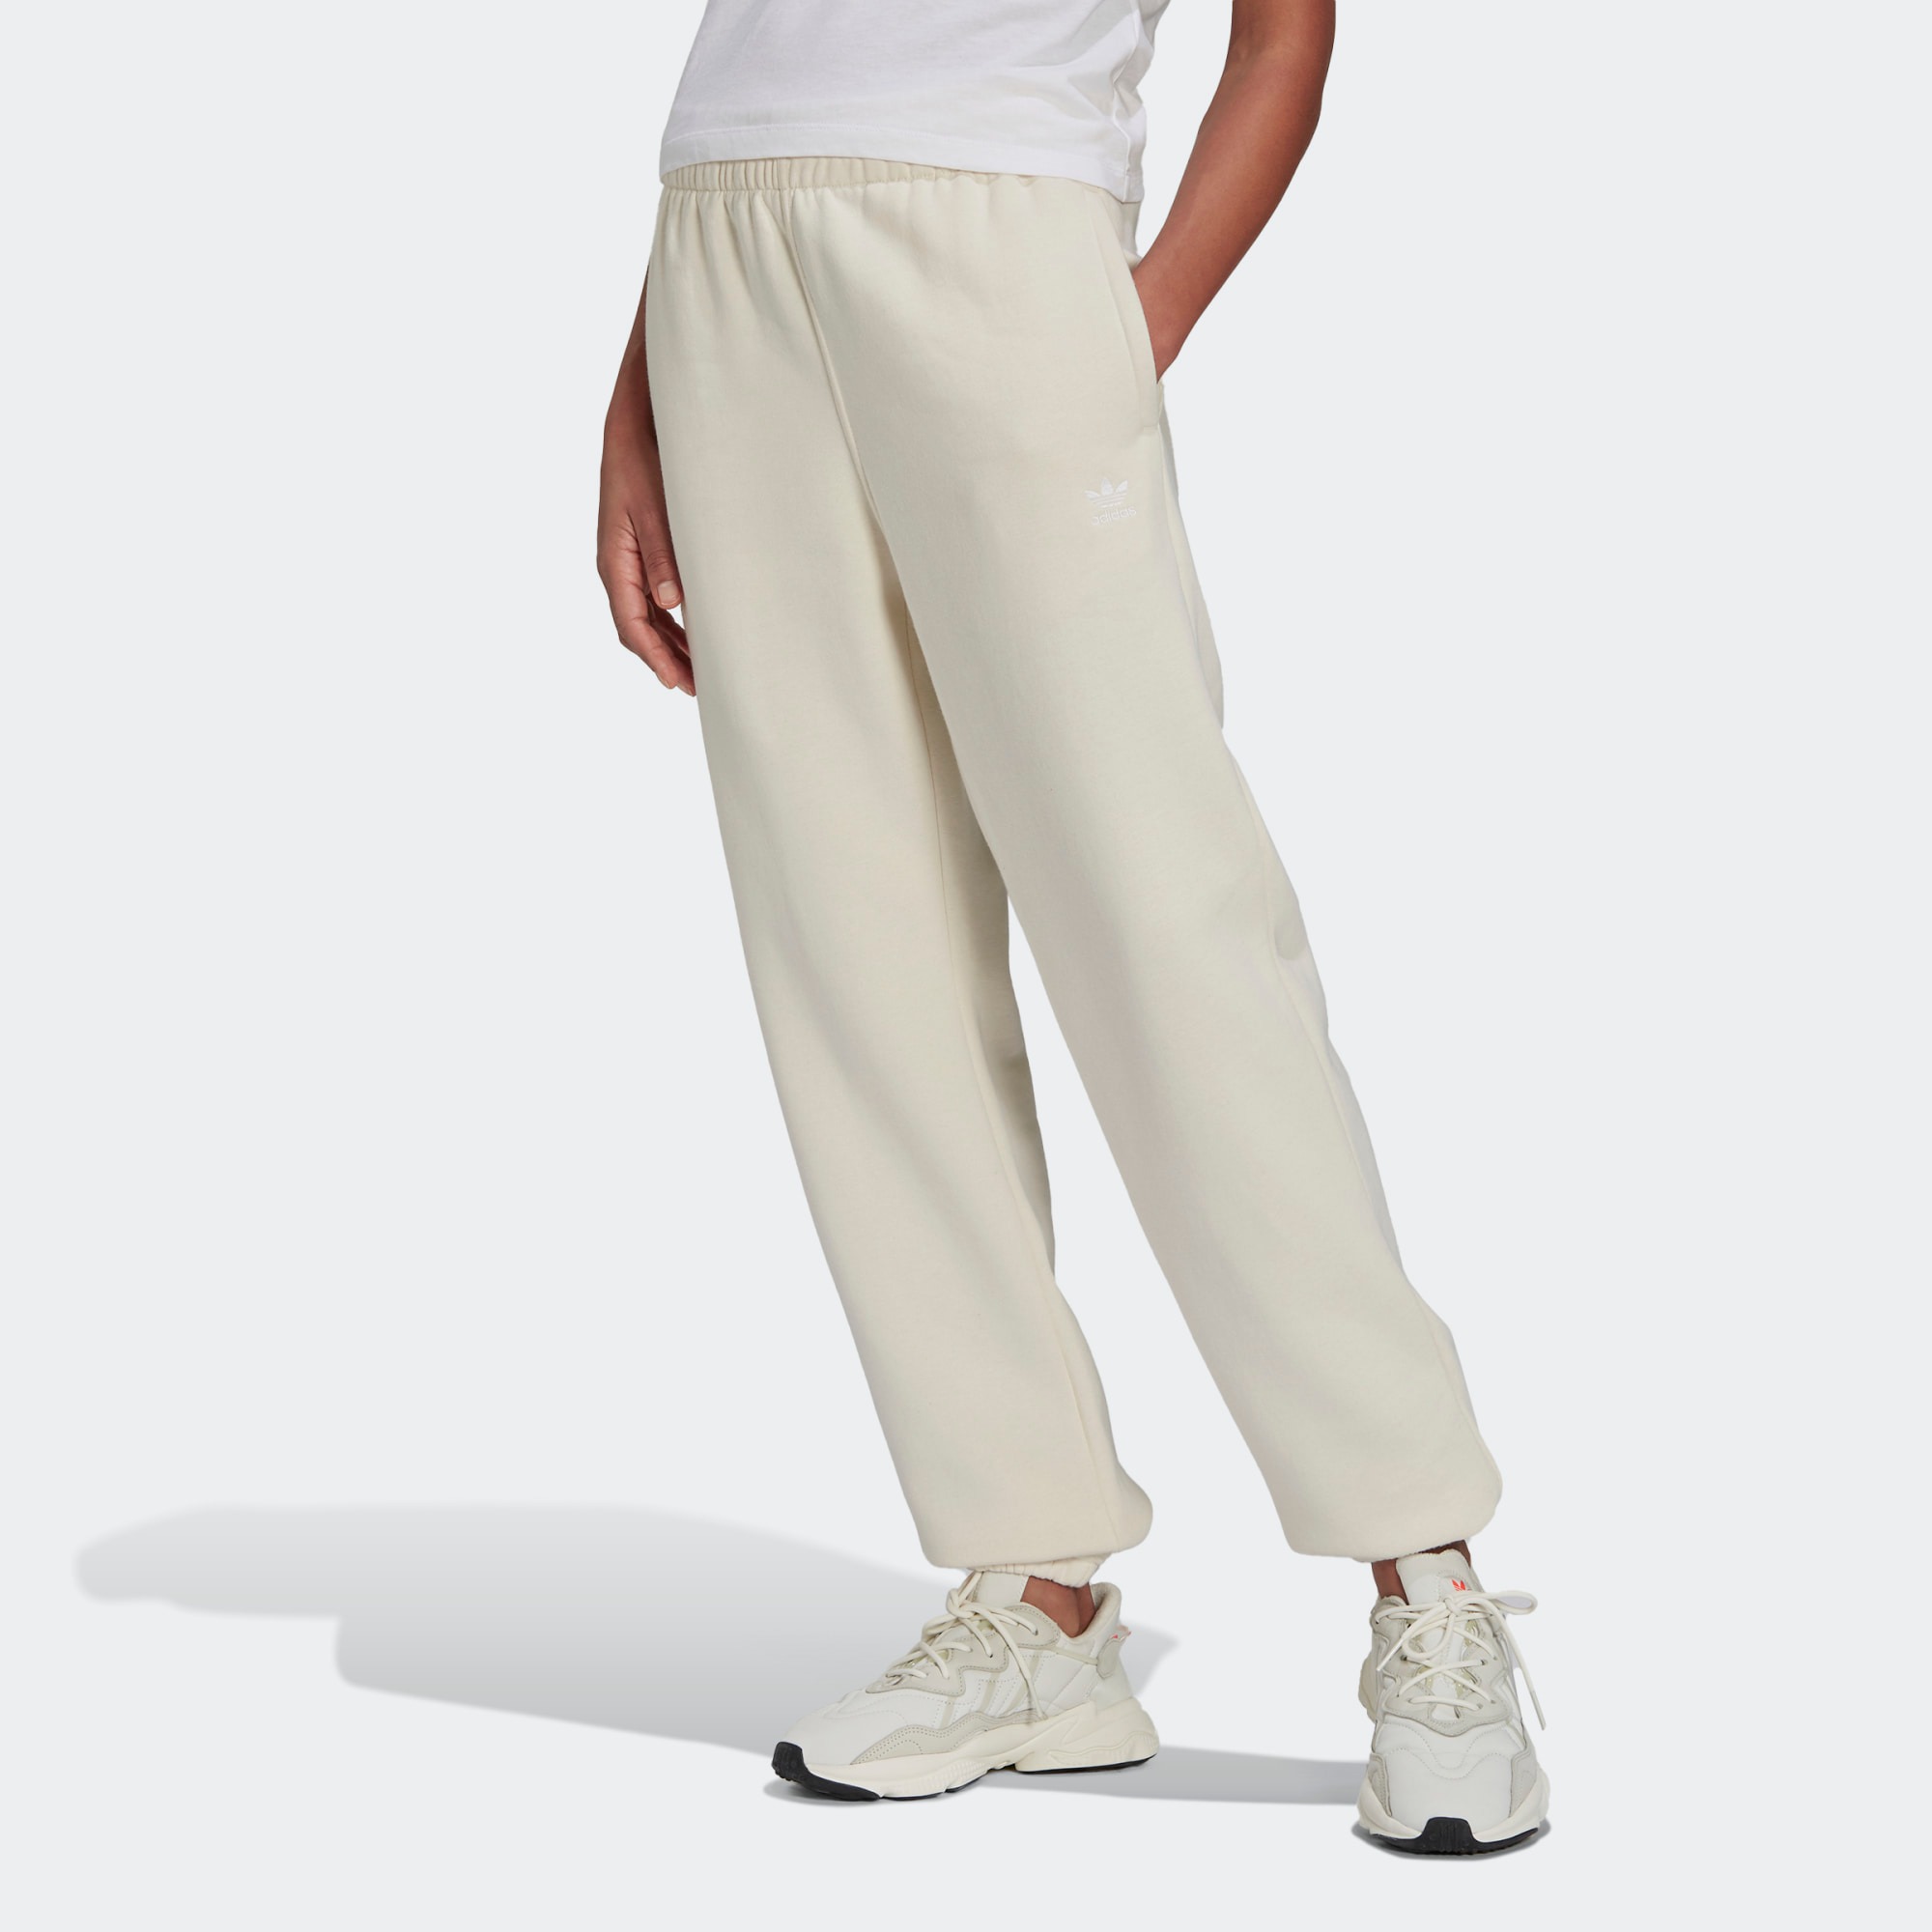 Спортивные брюки женские Adidas H14175 бежевые 40